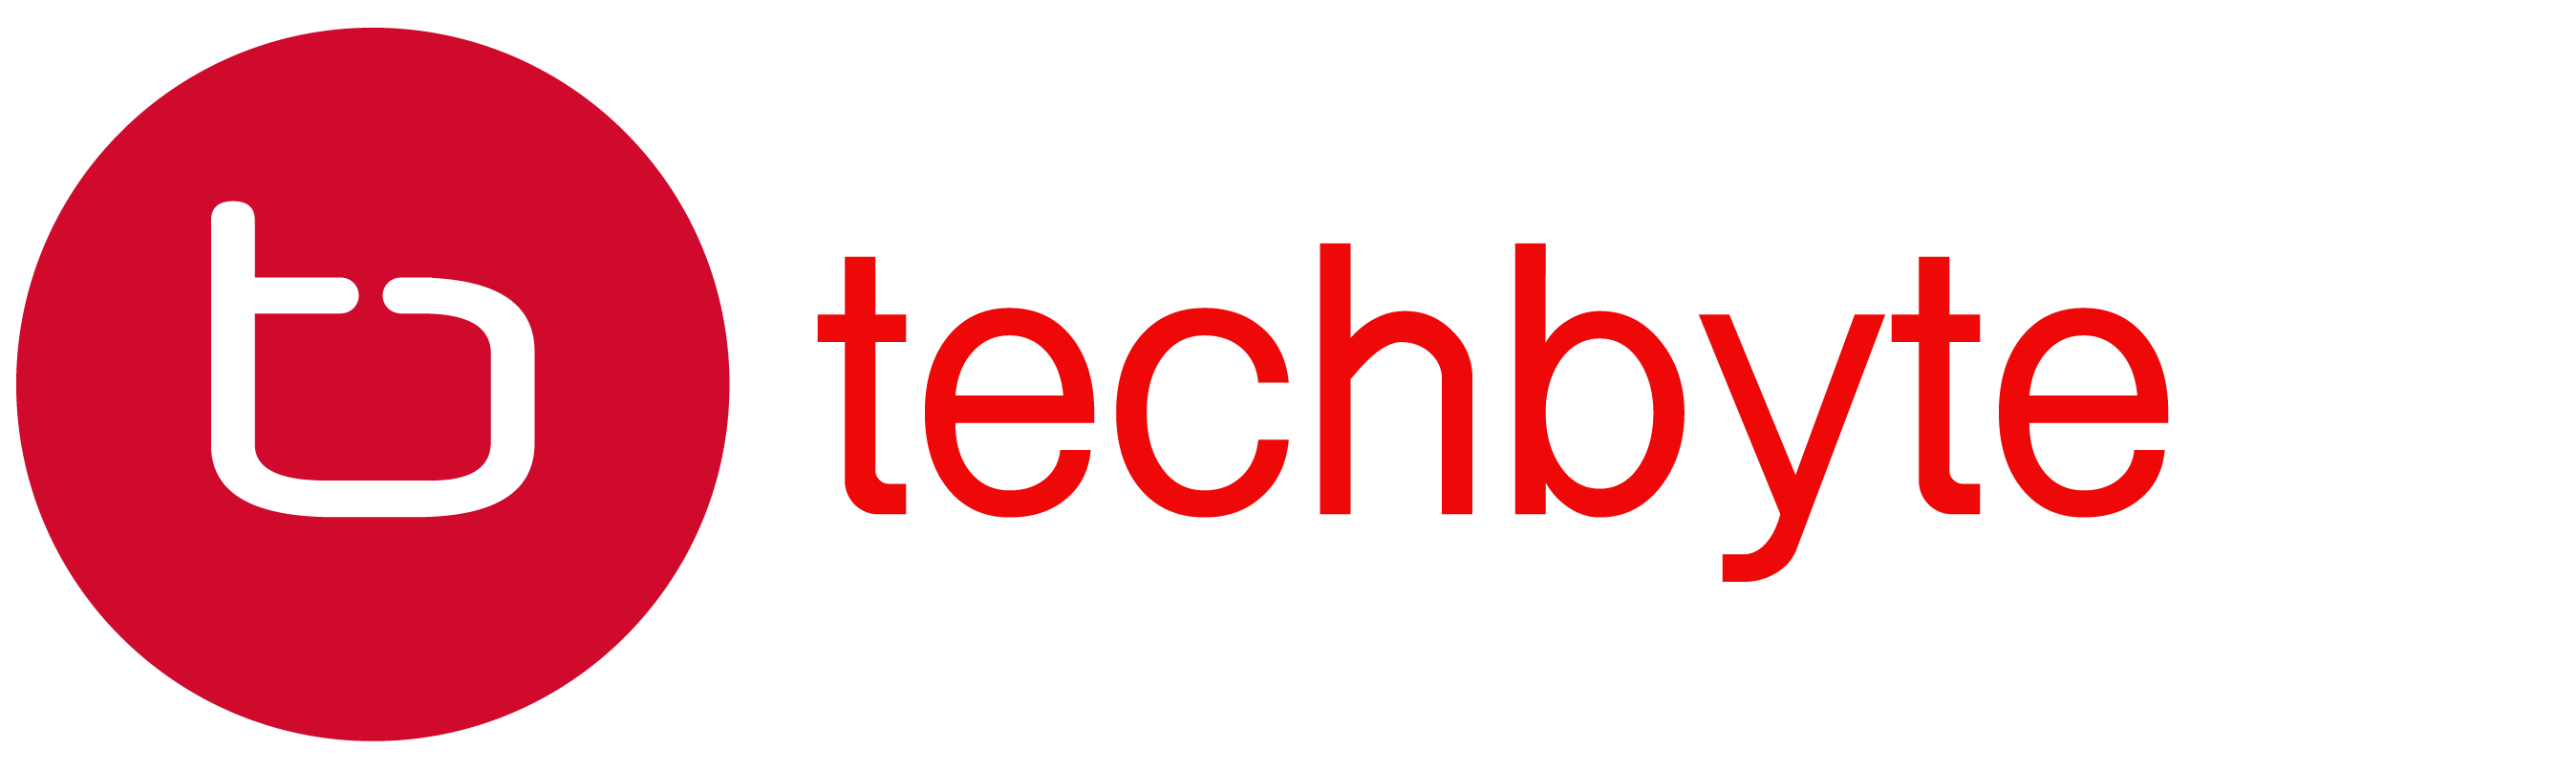 Techbyte